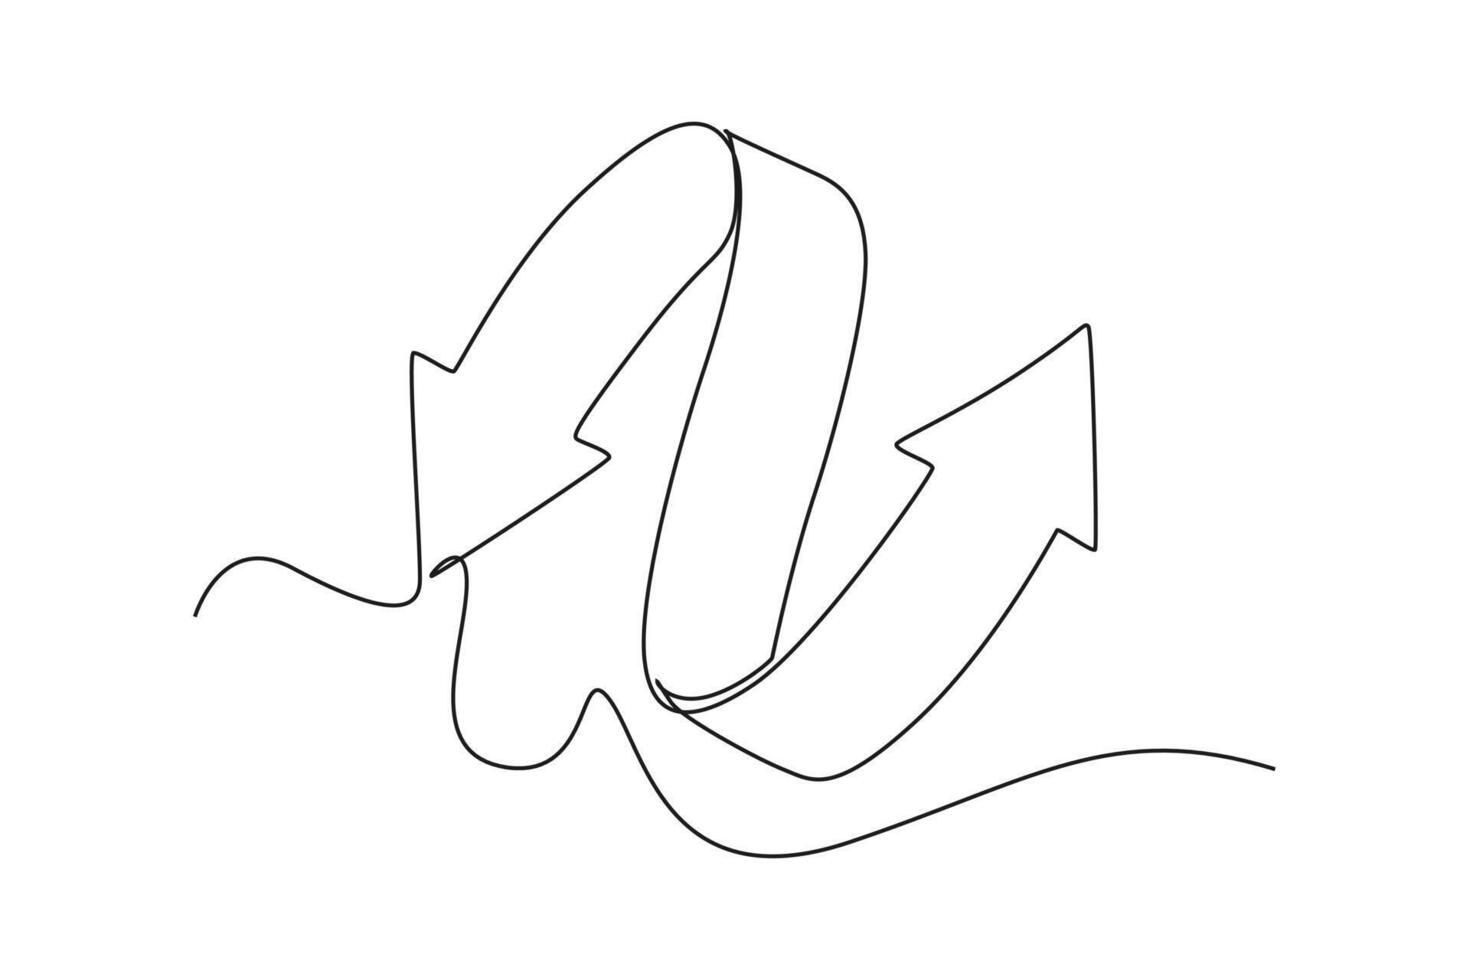 een doorlopend lijn tekening van pijl concept. tekening vector illustratie in gemakkelijk lineair stijl.